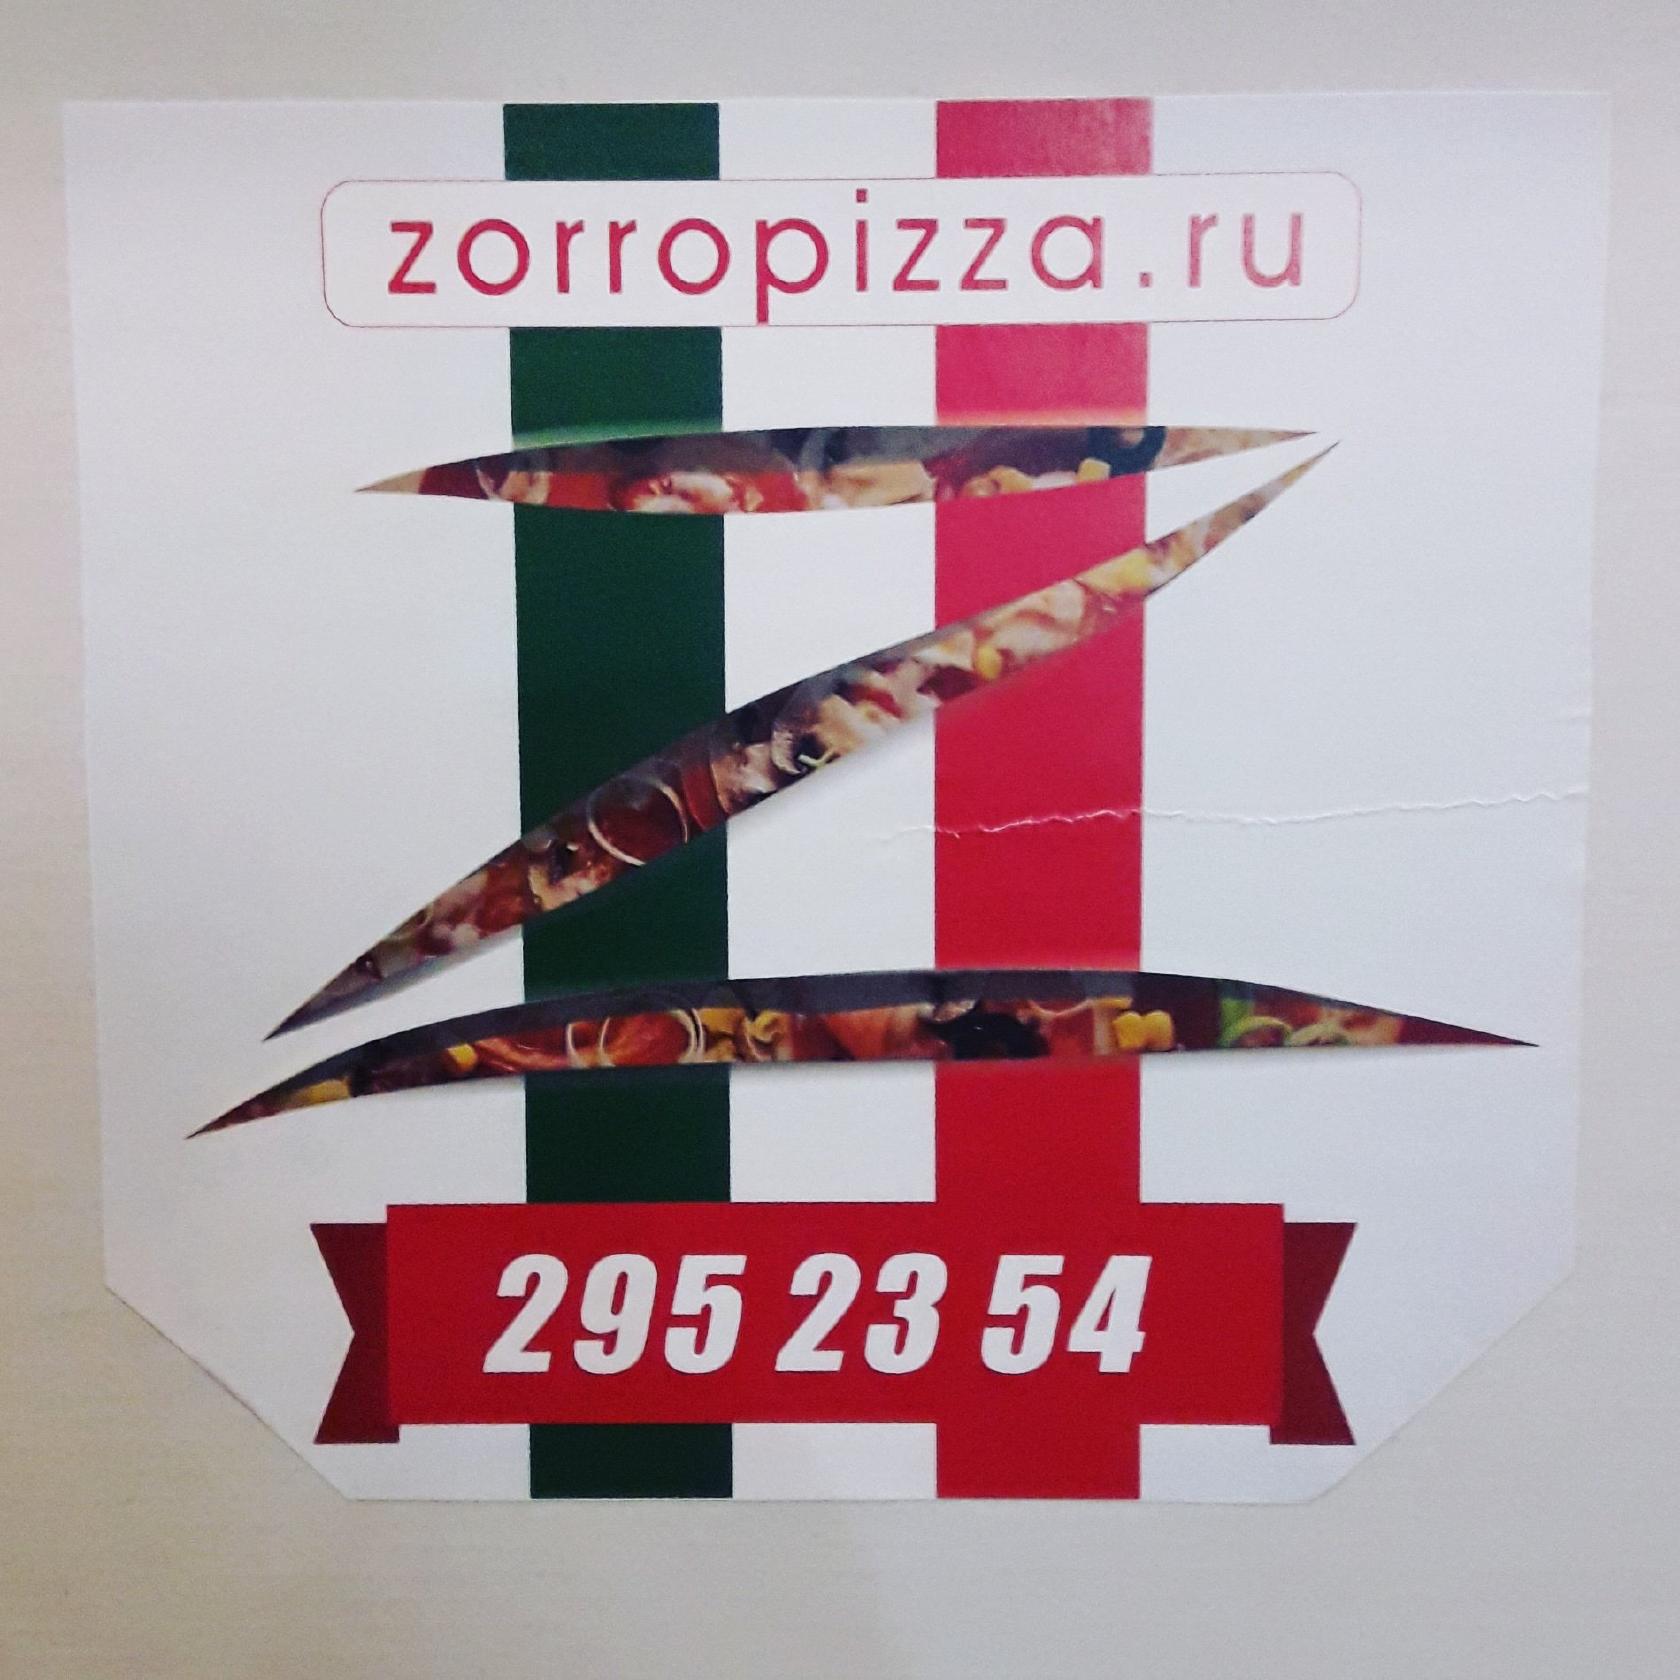 ZorroPizza